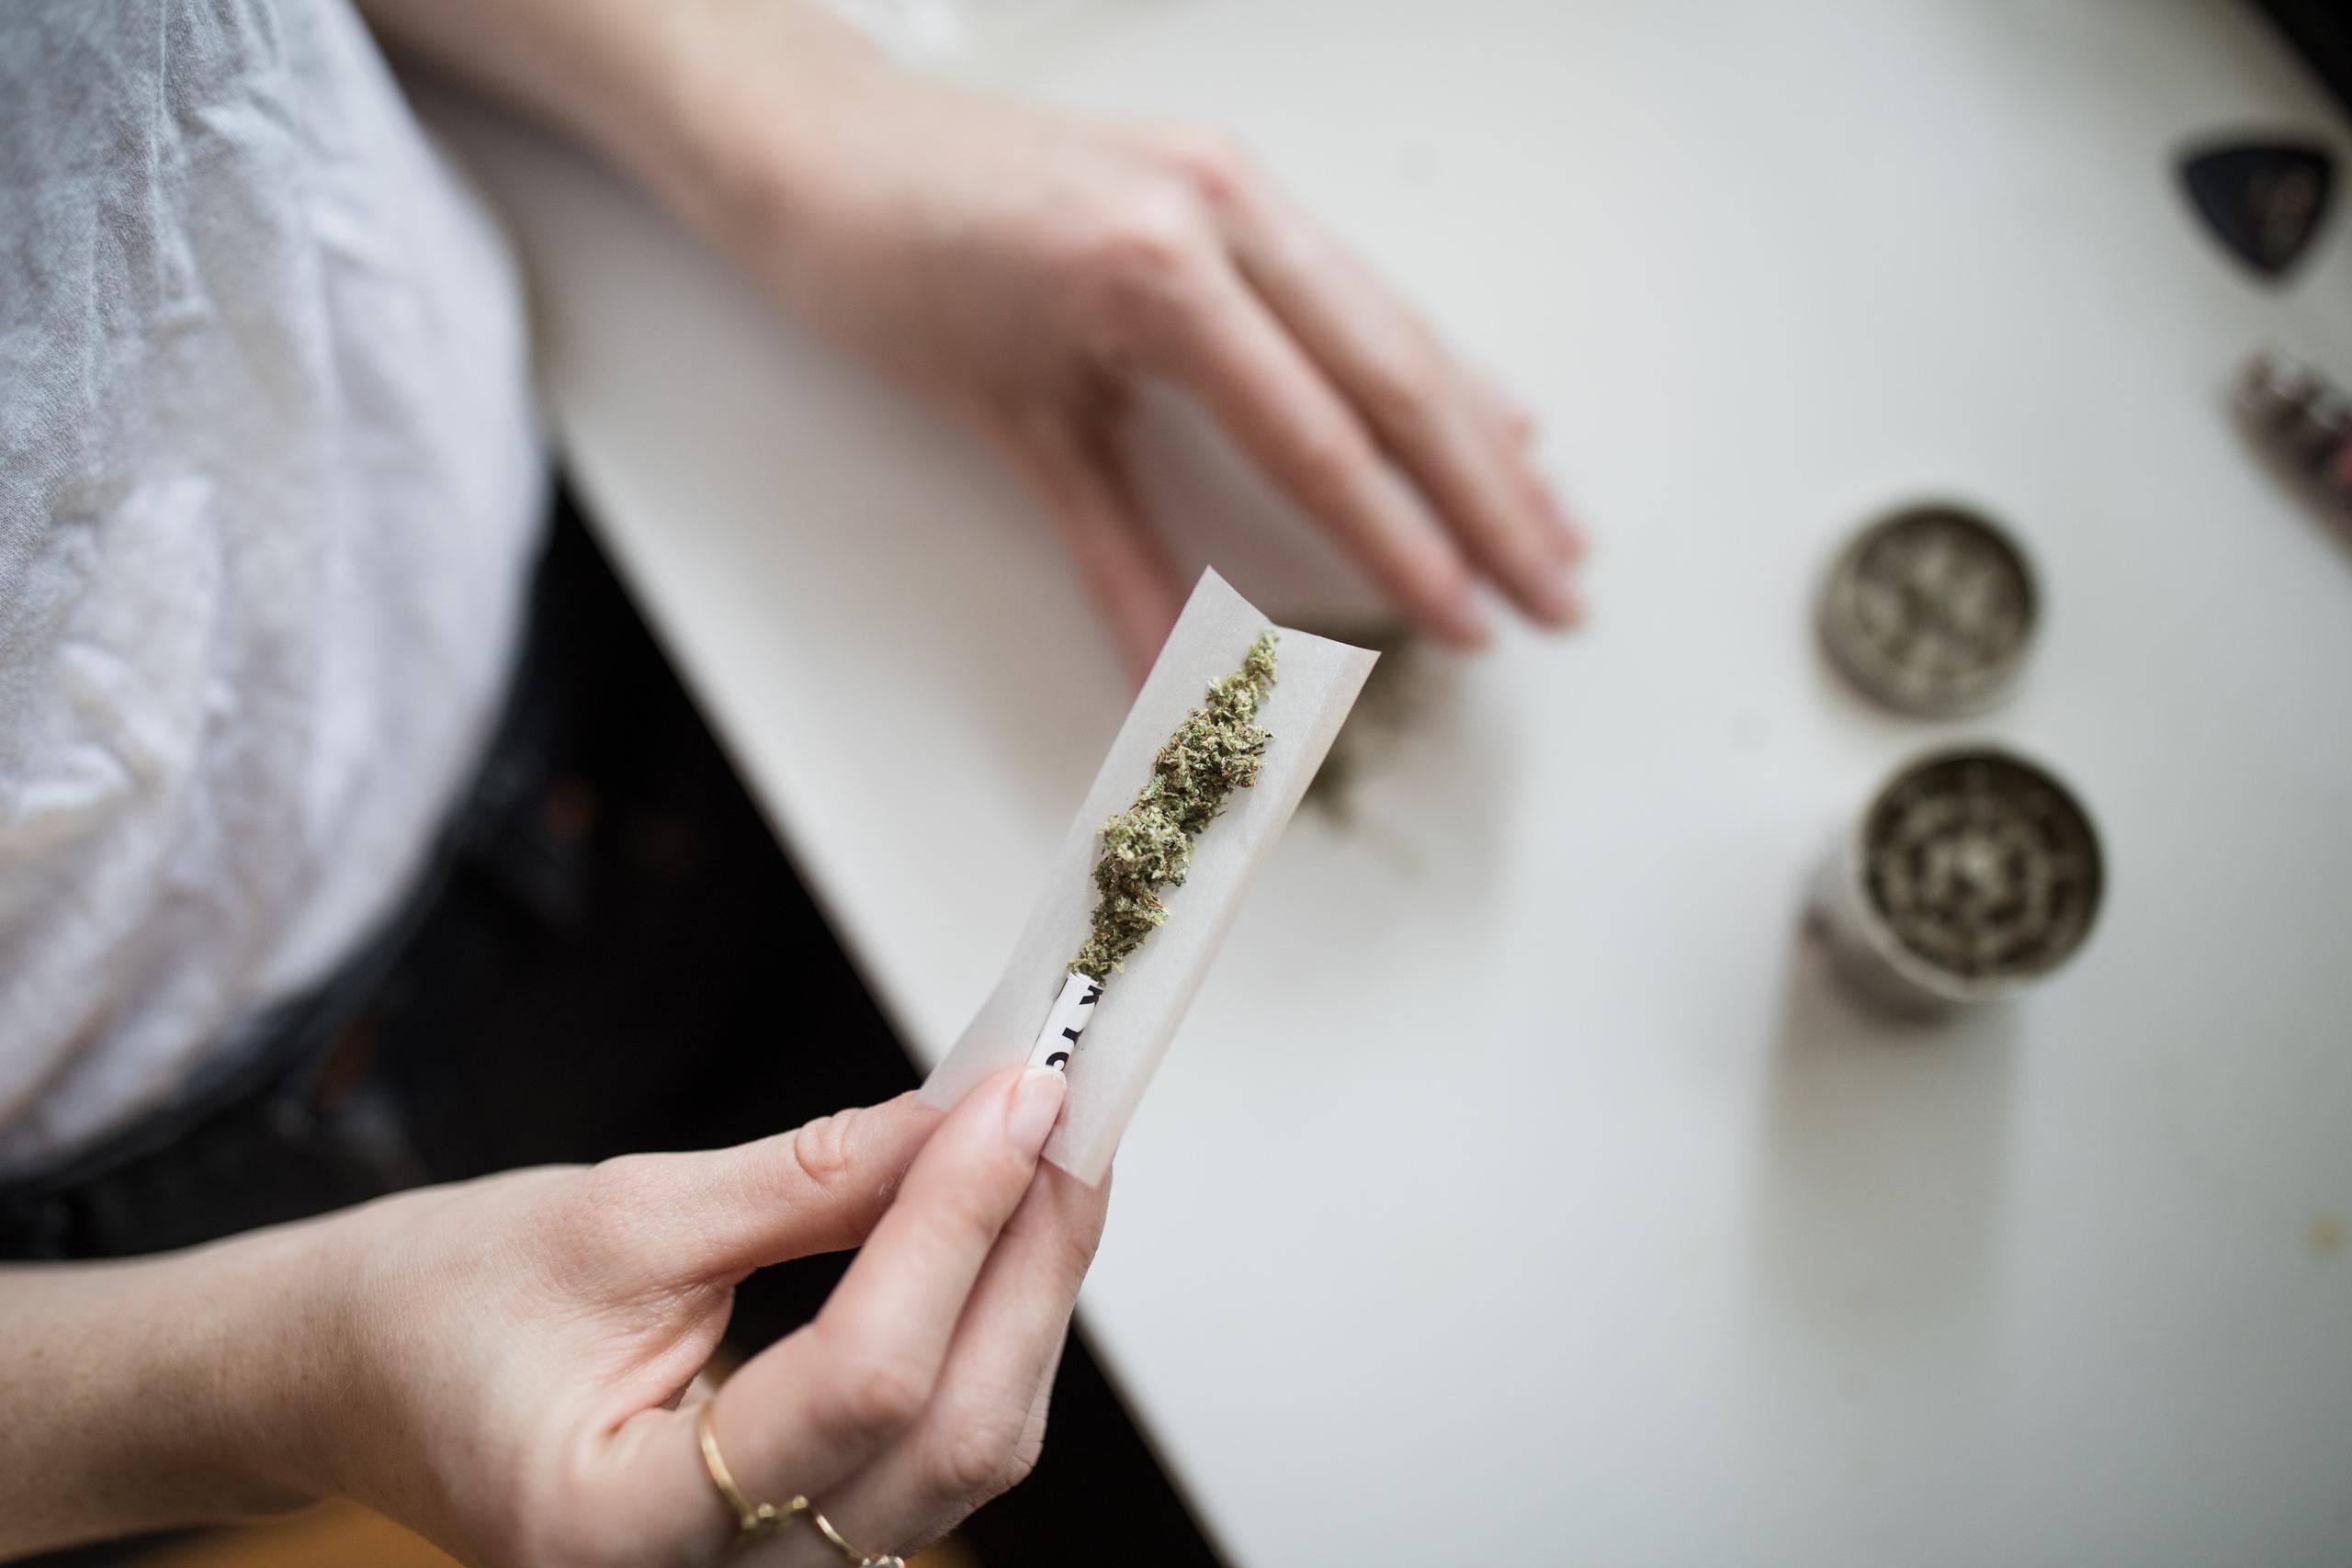 El uso generalizado de la marihuana entre las generaciones jóvenes lo convierte en un importante problema de salud pública. (Thought Catalog / Unsplash)